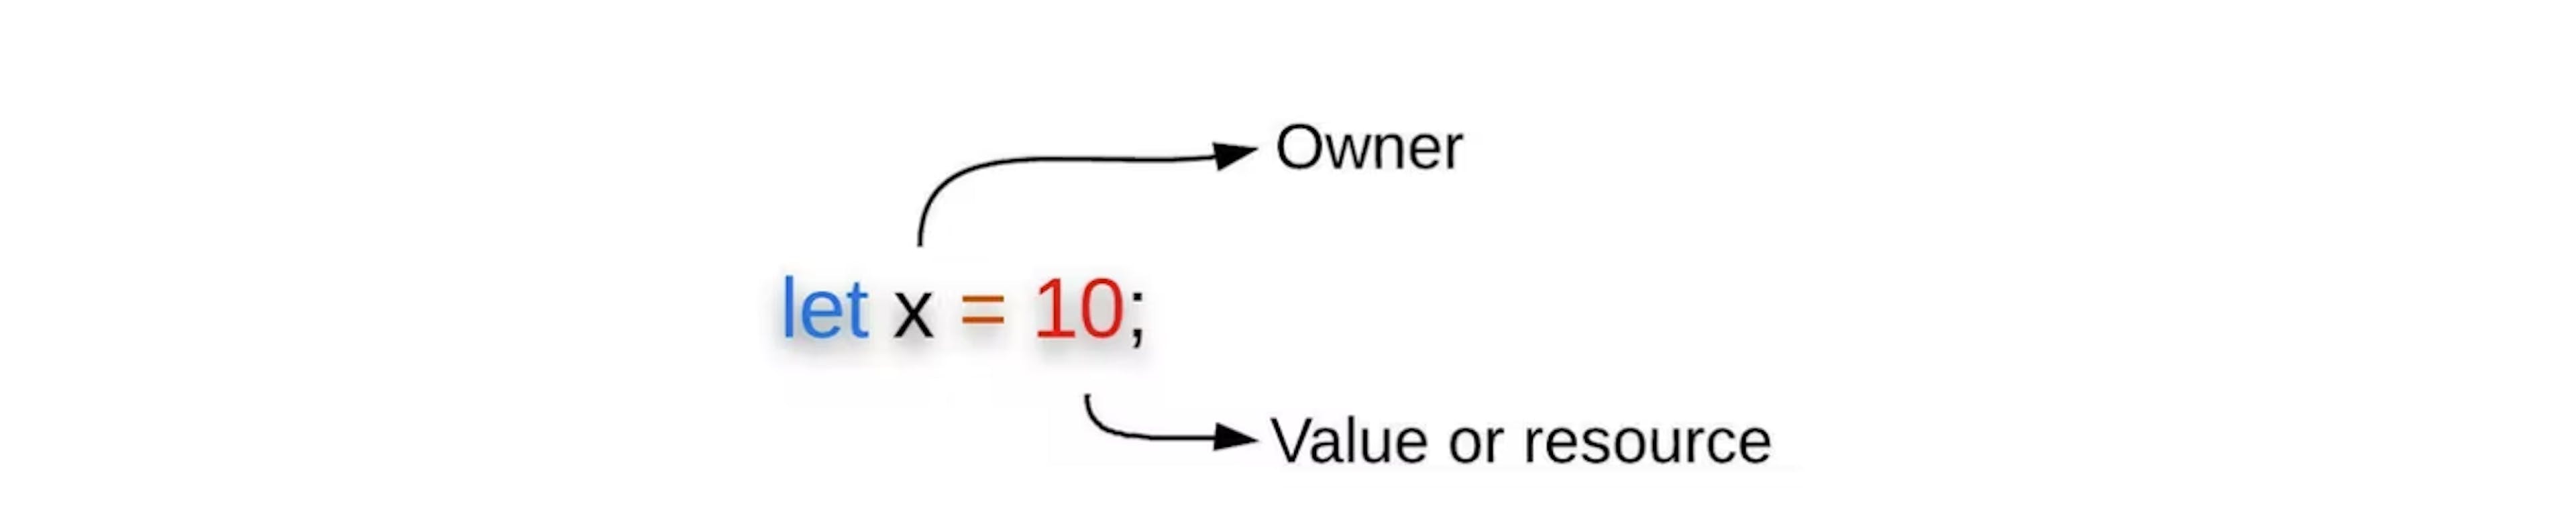 Figura 3: El enlace de variables muestra el propietario y su valor/recurso.